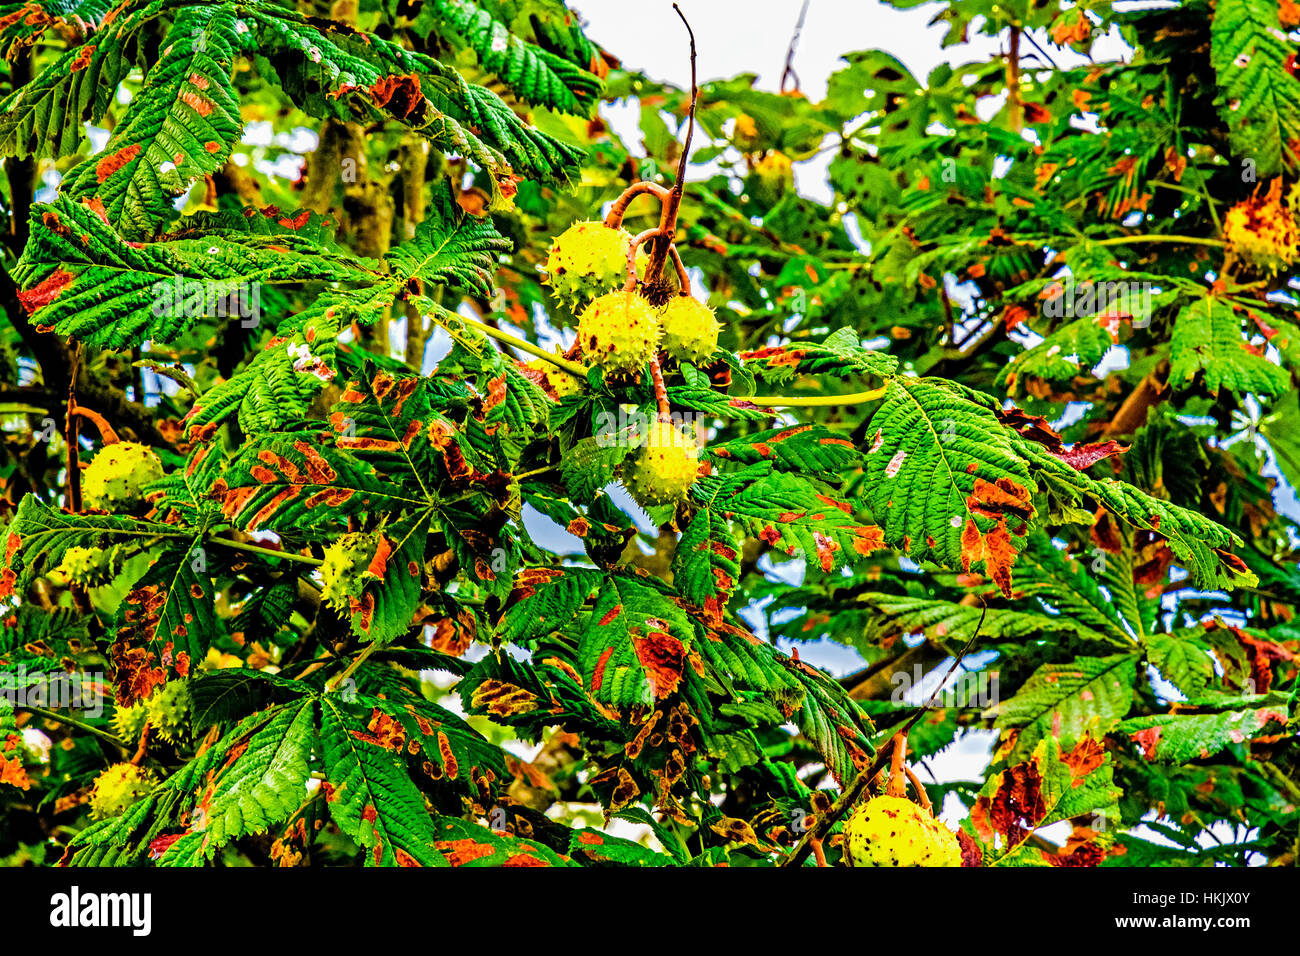 Kastanien am baum, chestnuttree Stock Photo